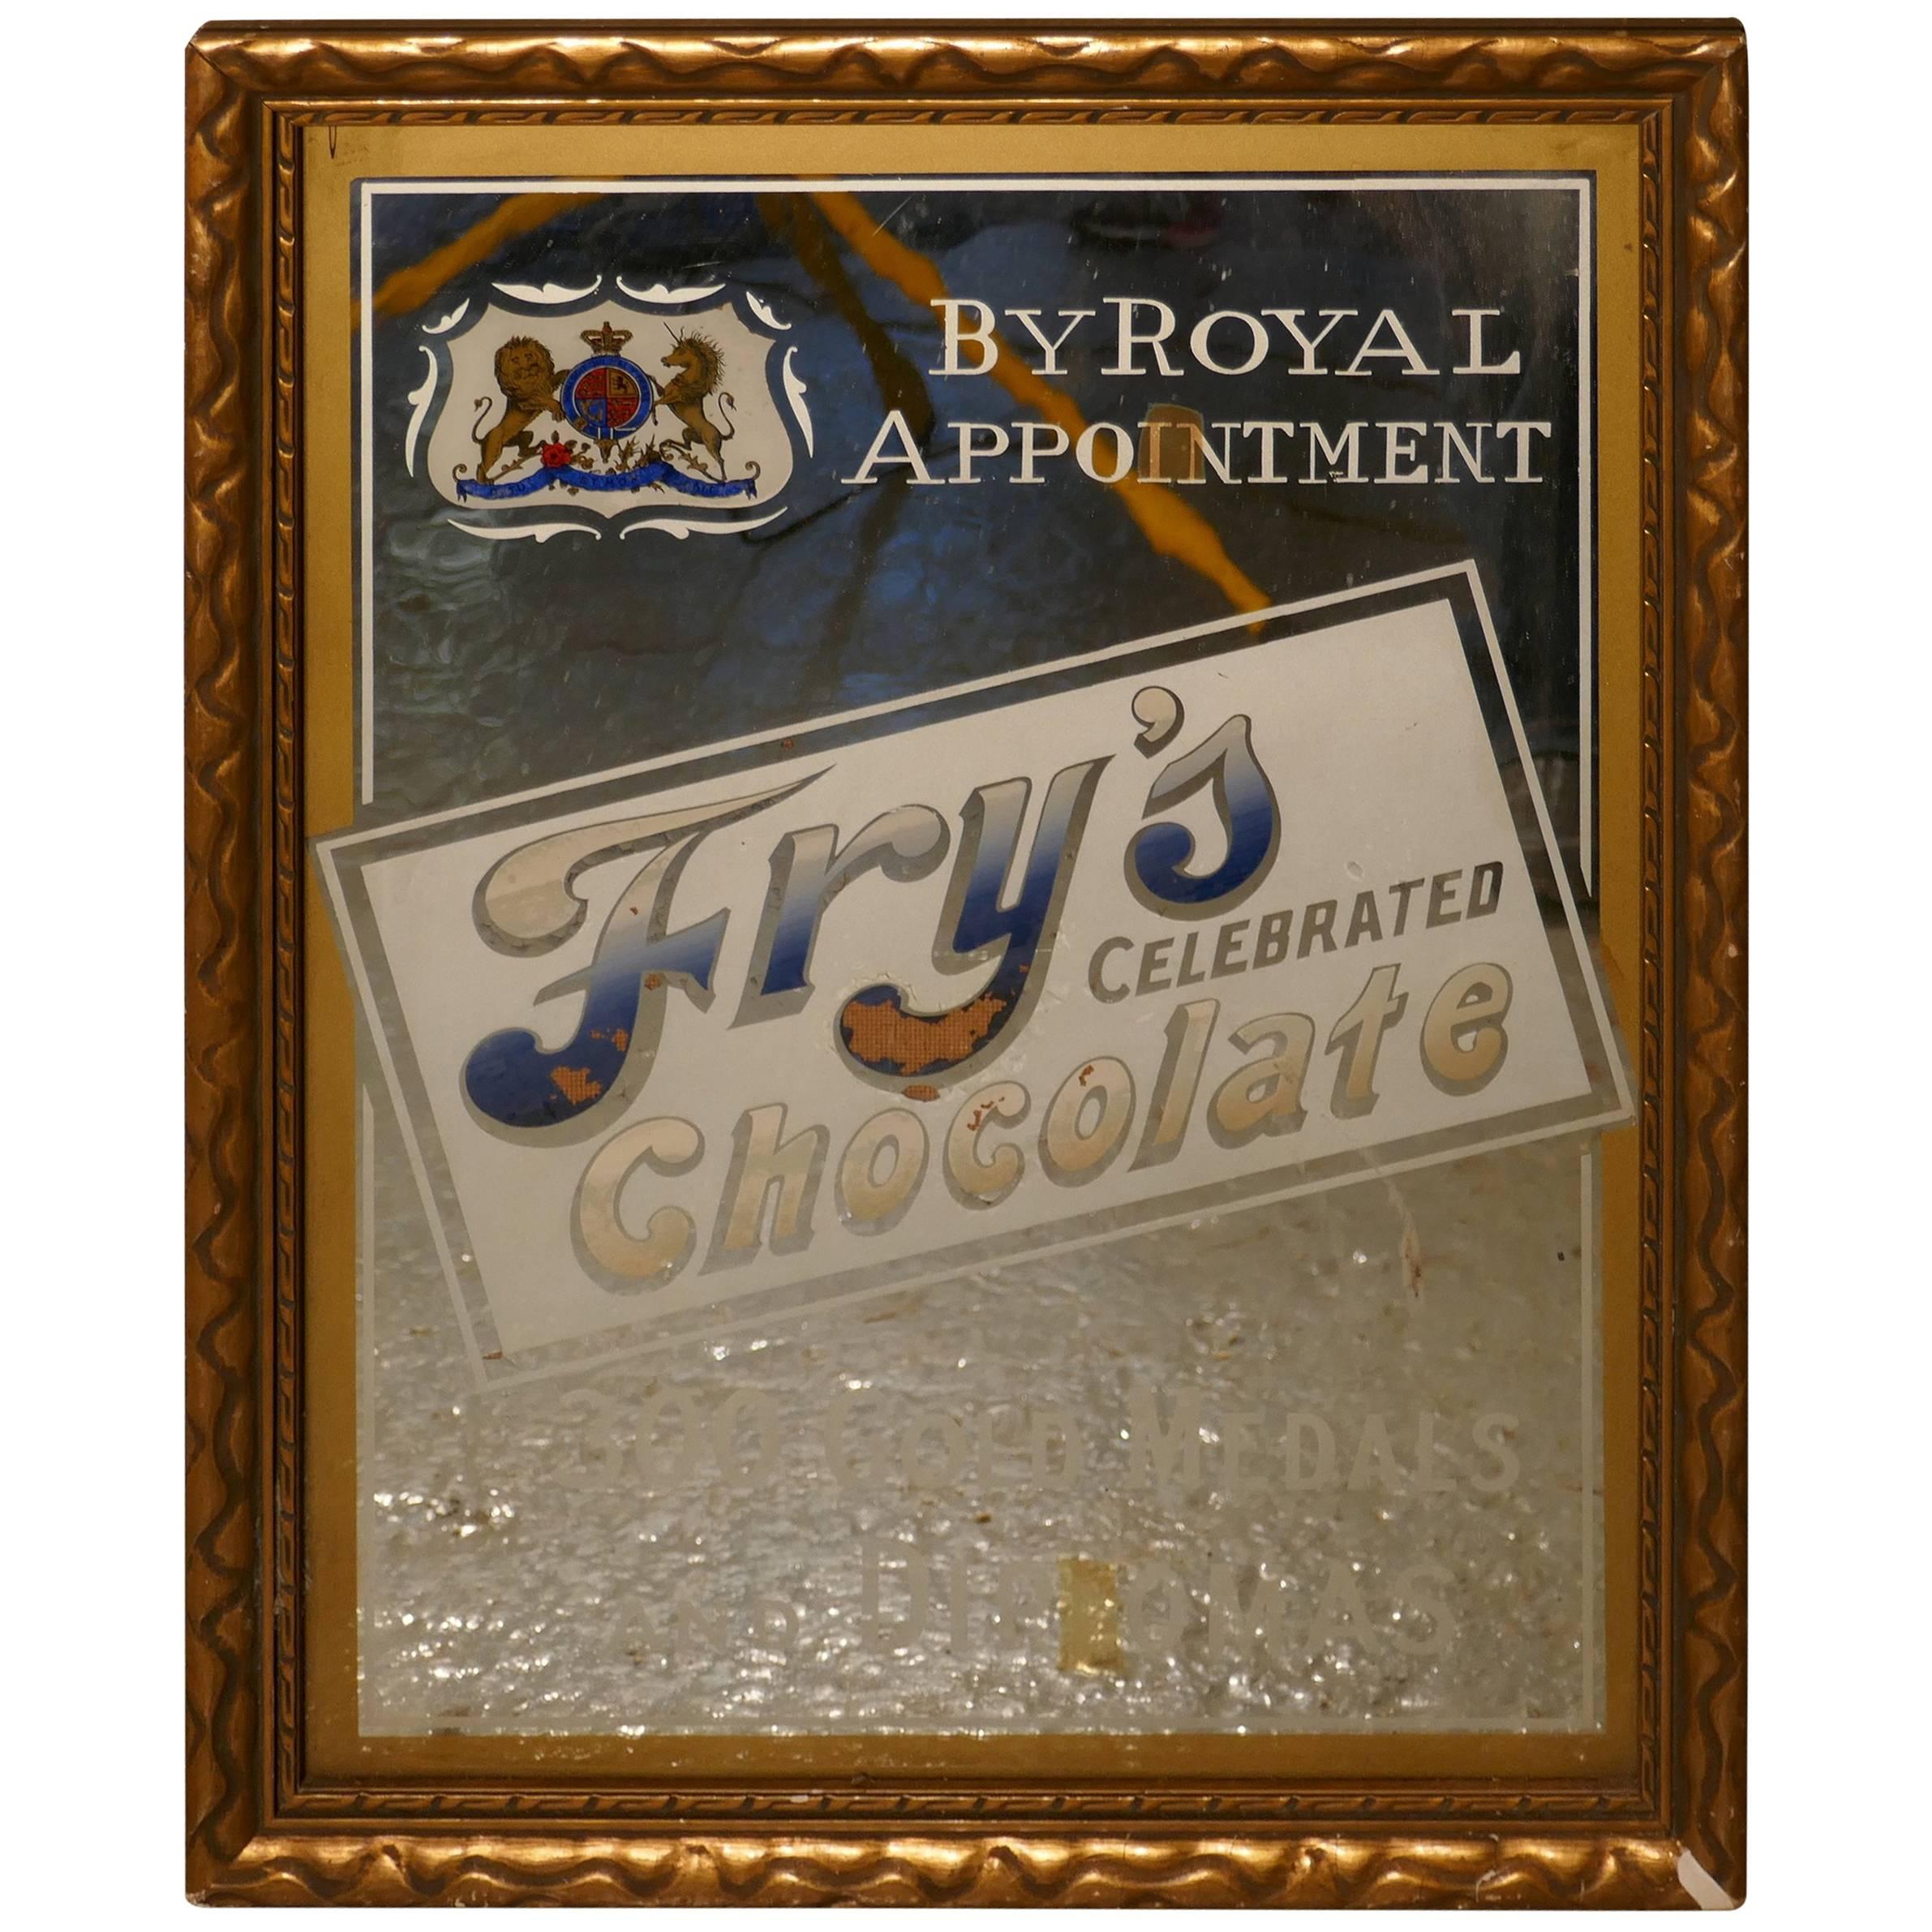 Miroir publicitaire célèbre en forme de chocolat de Fry's, réalisé sur commande royale